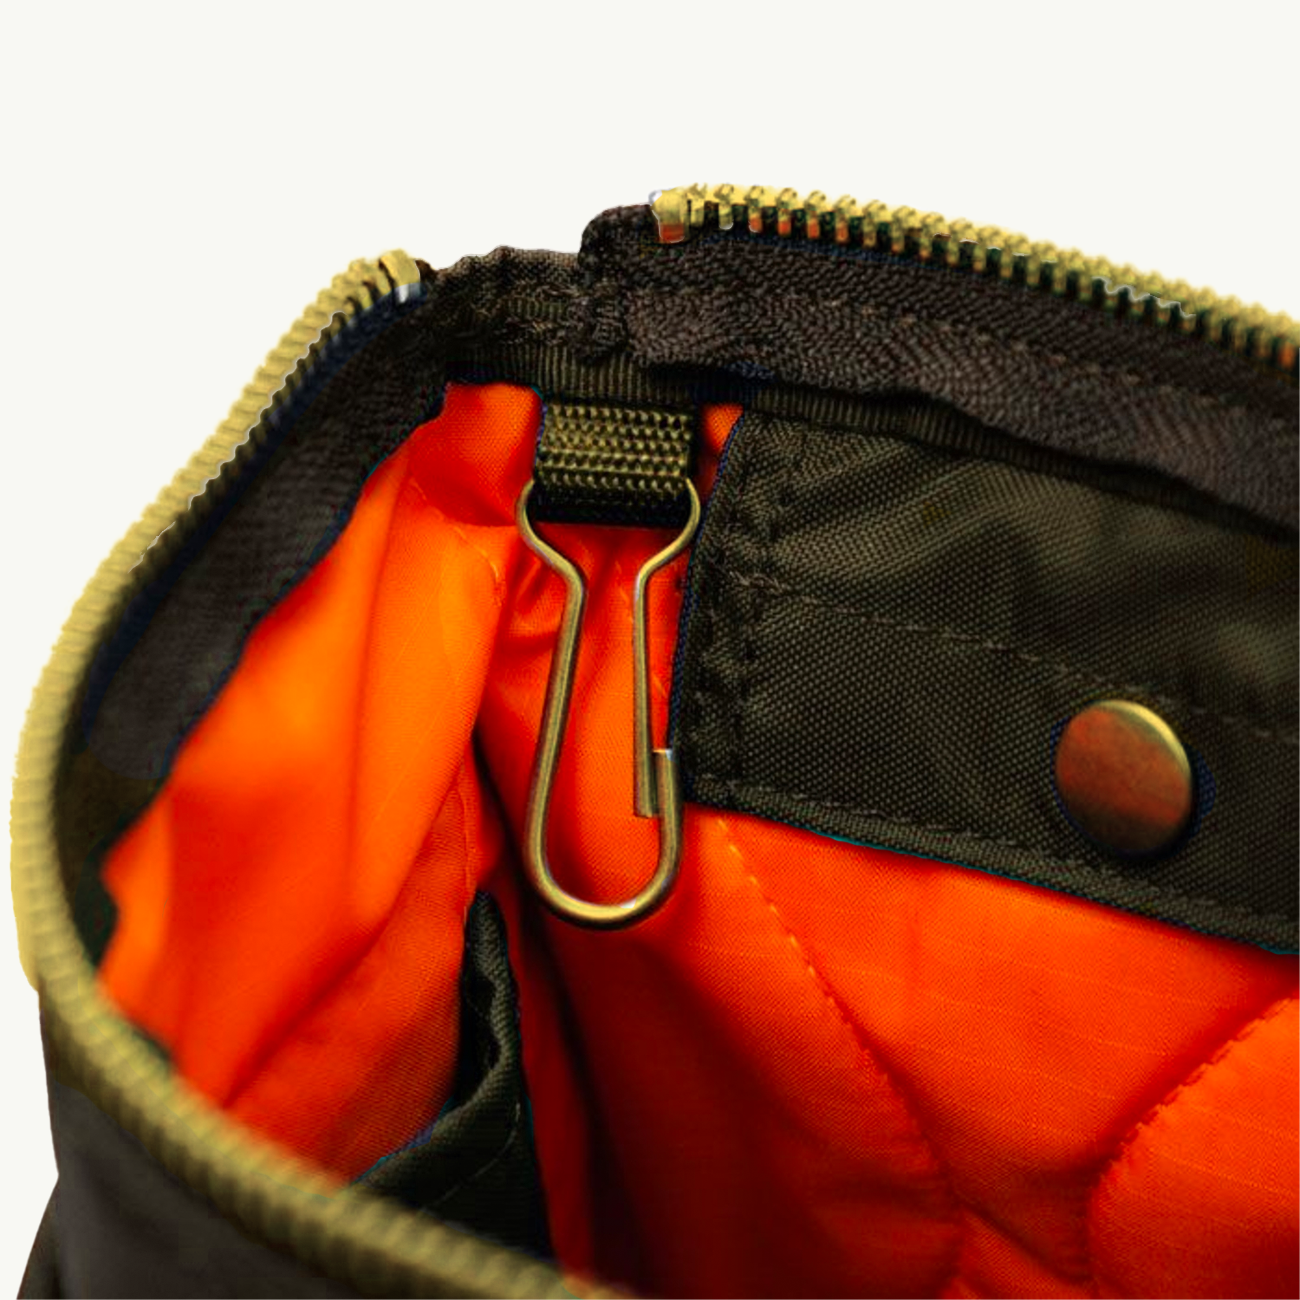 Force Shoulder Bag - Olive Drab